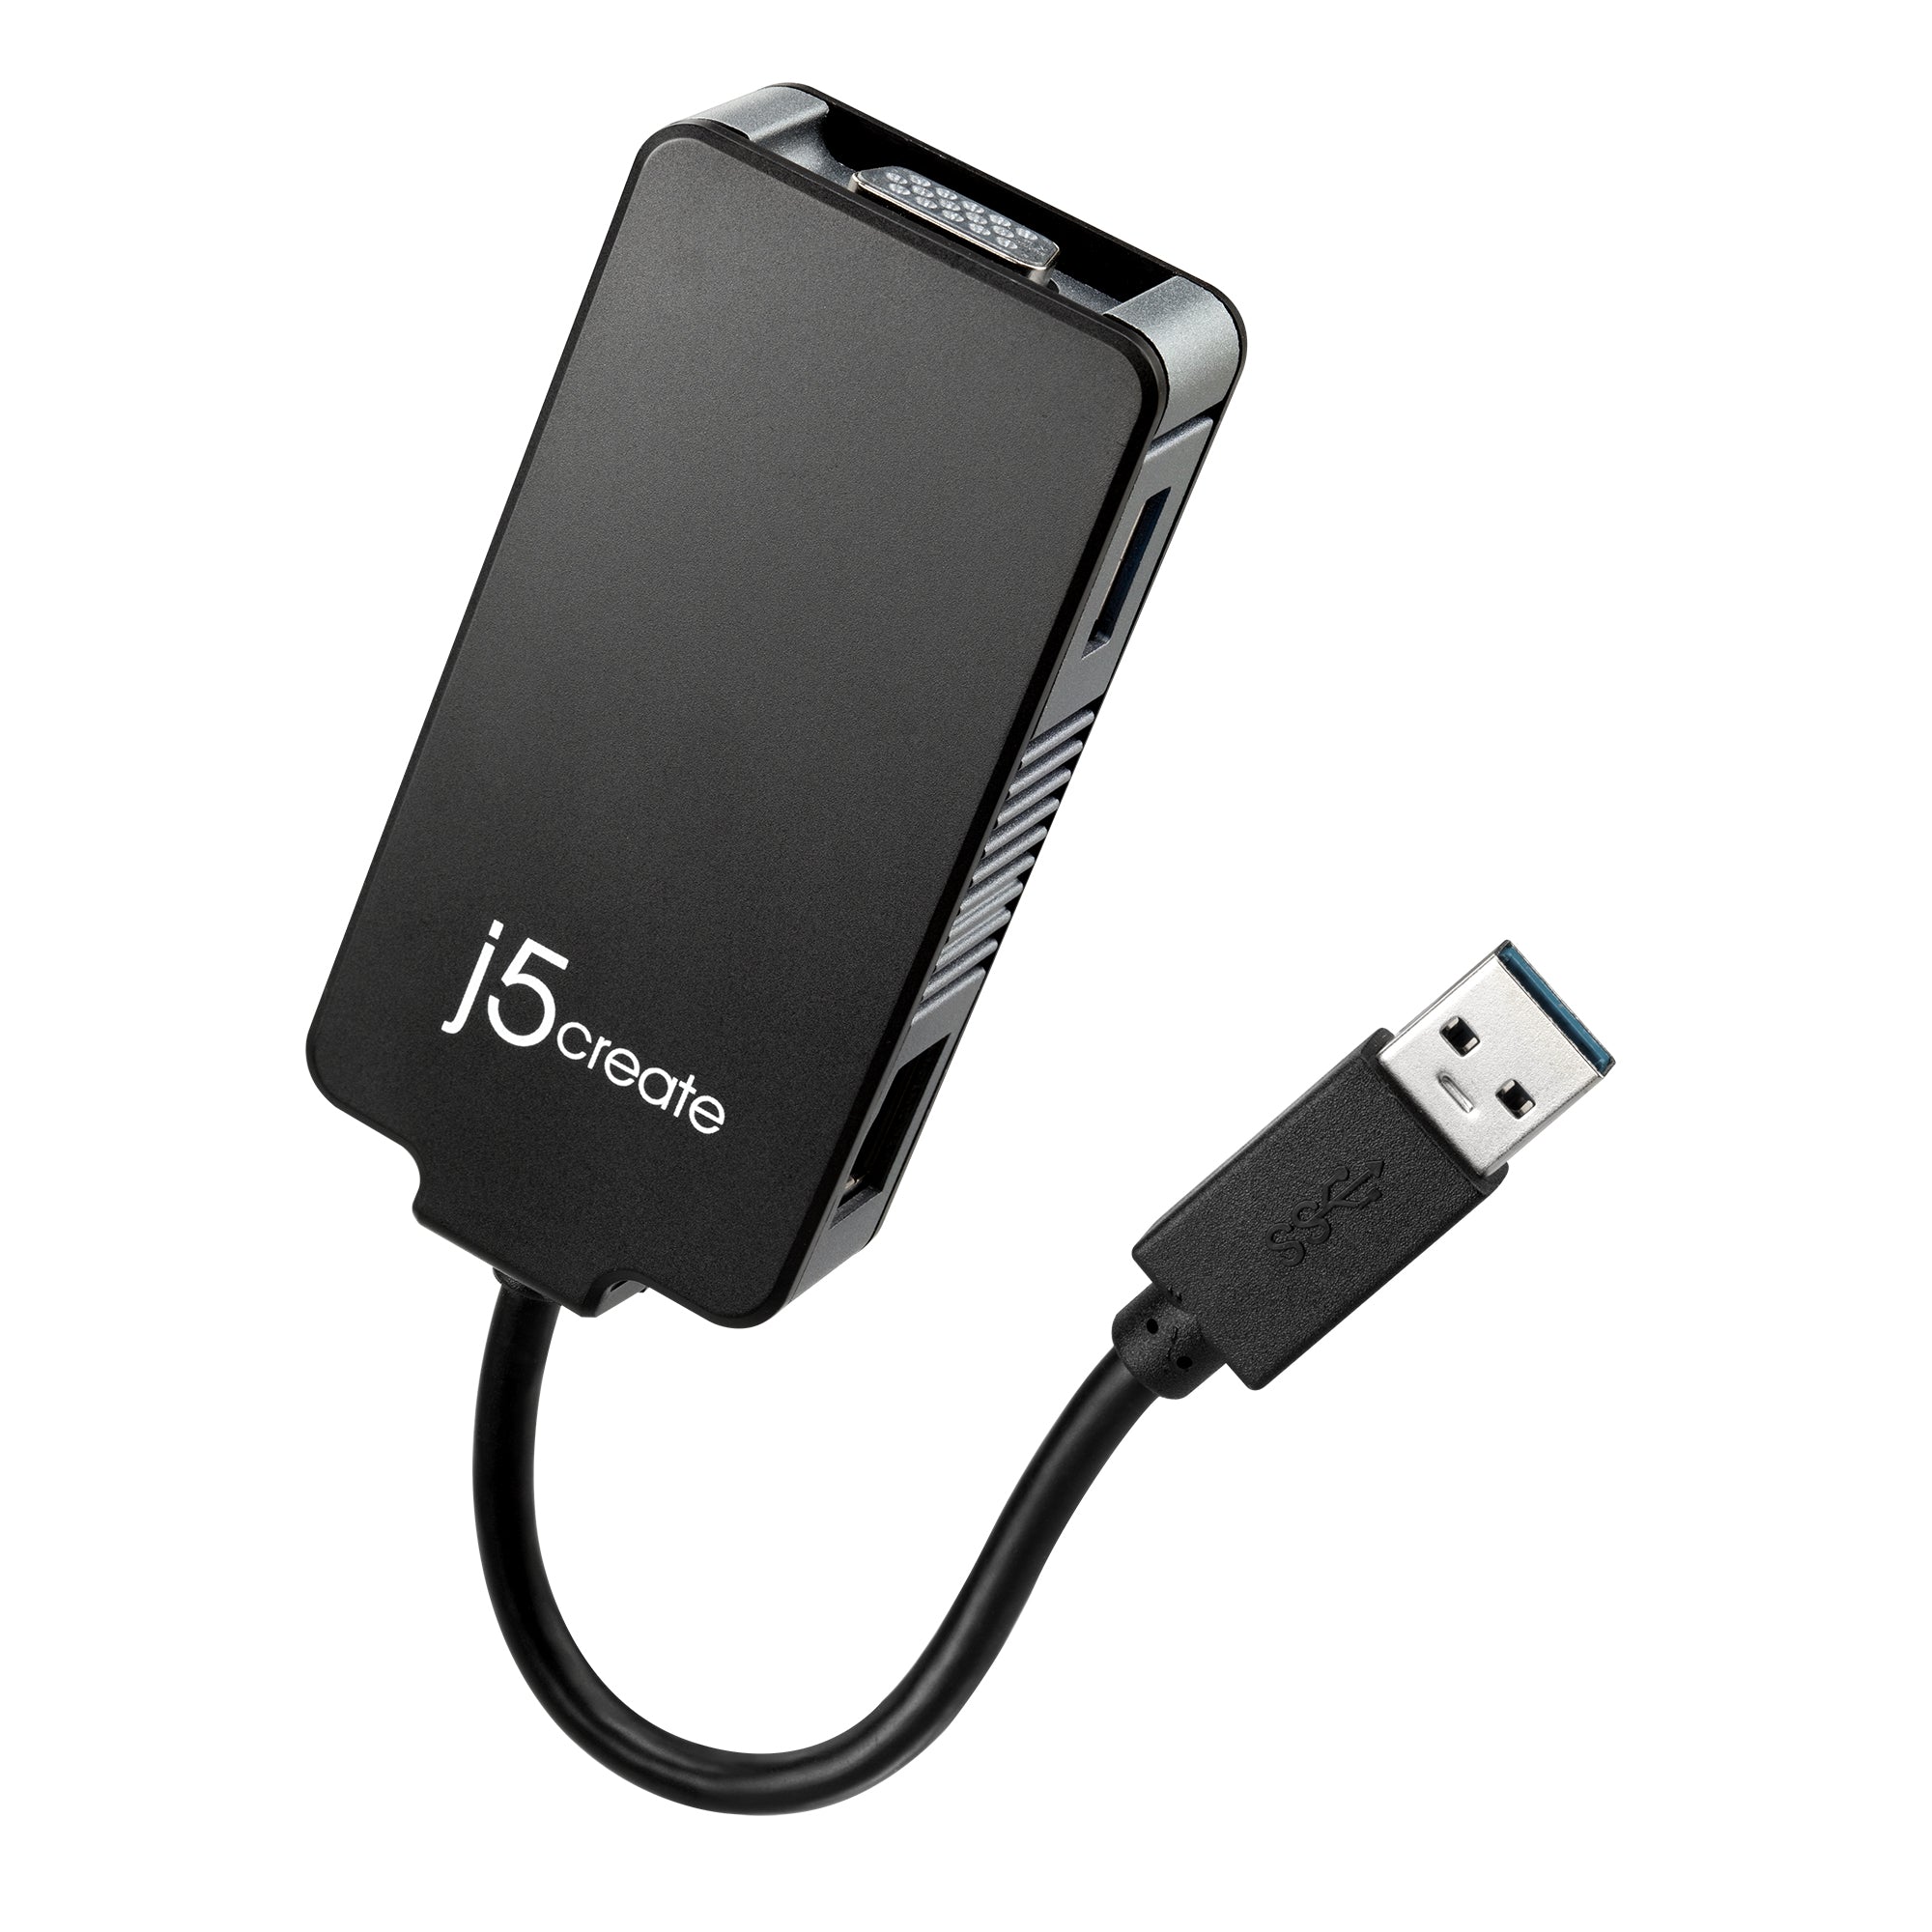 USB 3.0 Multi-Adapter – j5create